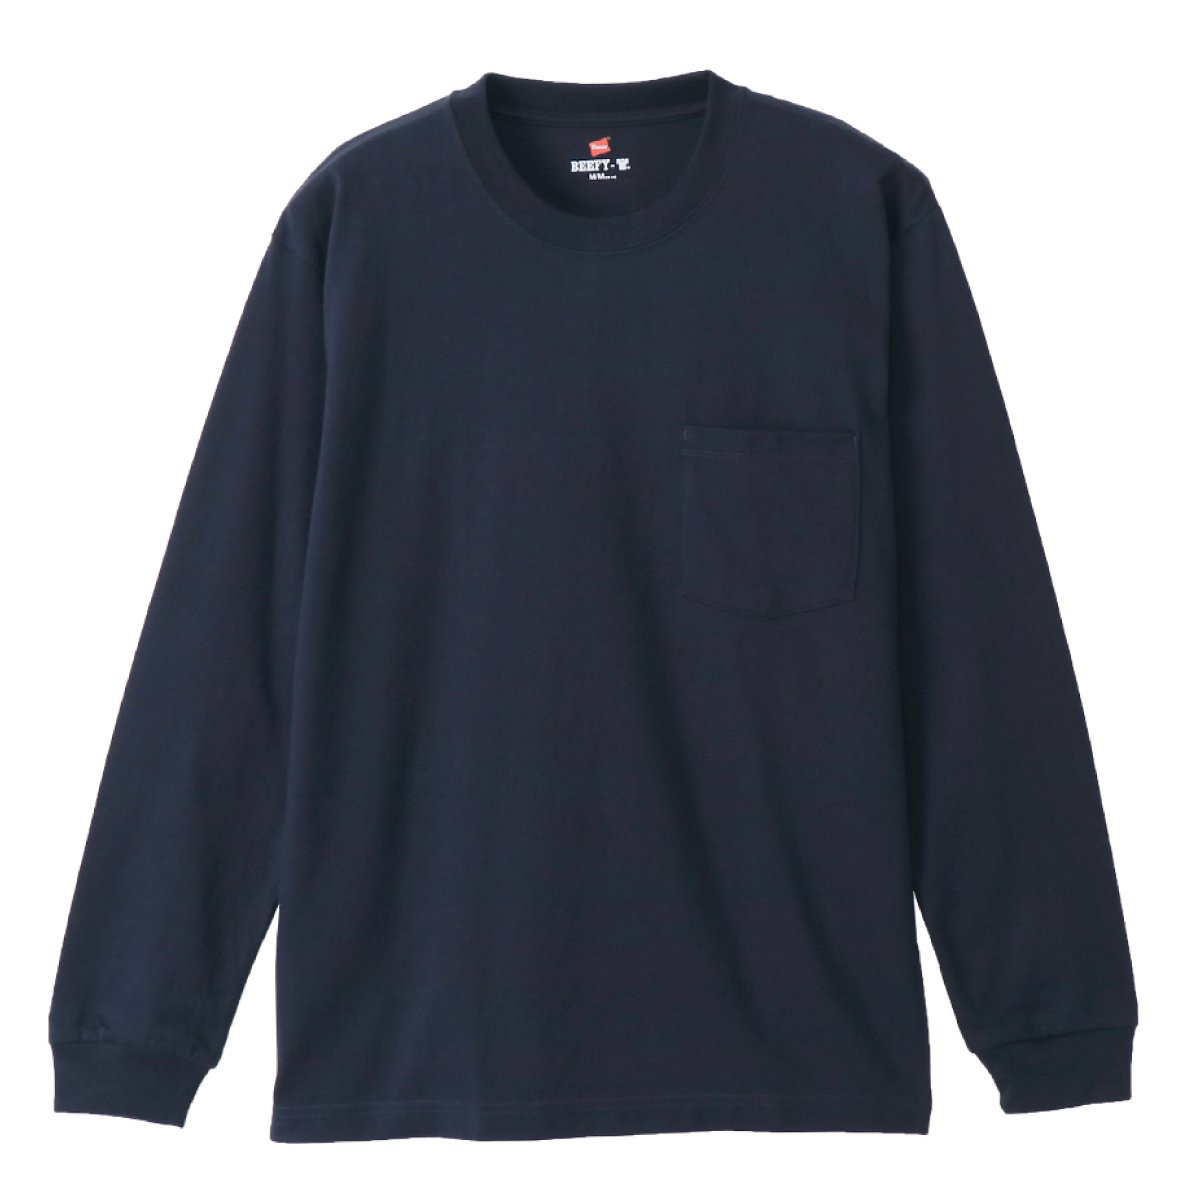 ビーフィーポケットロングスリーブTシャツ BEEFY-T ヘインズ | メンズ | 1枚 | H5196 | ヘザーグレー